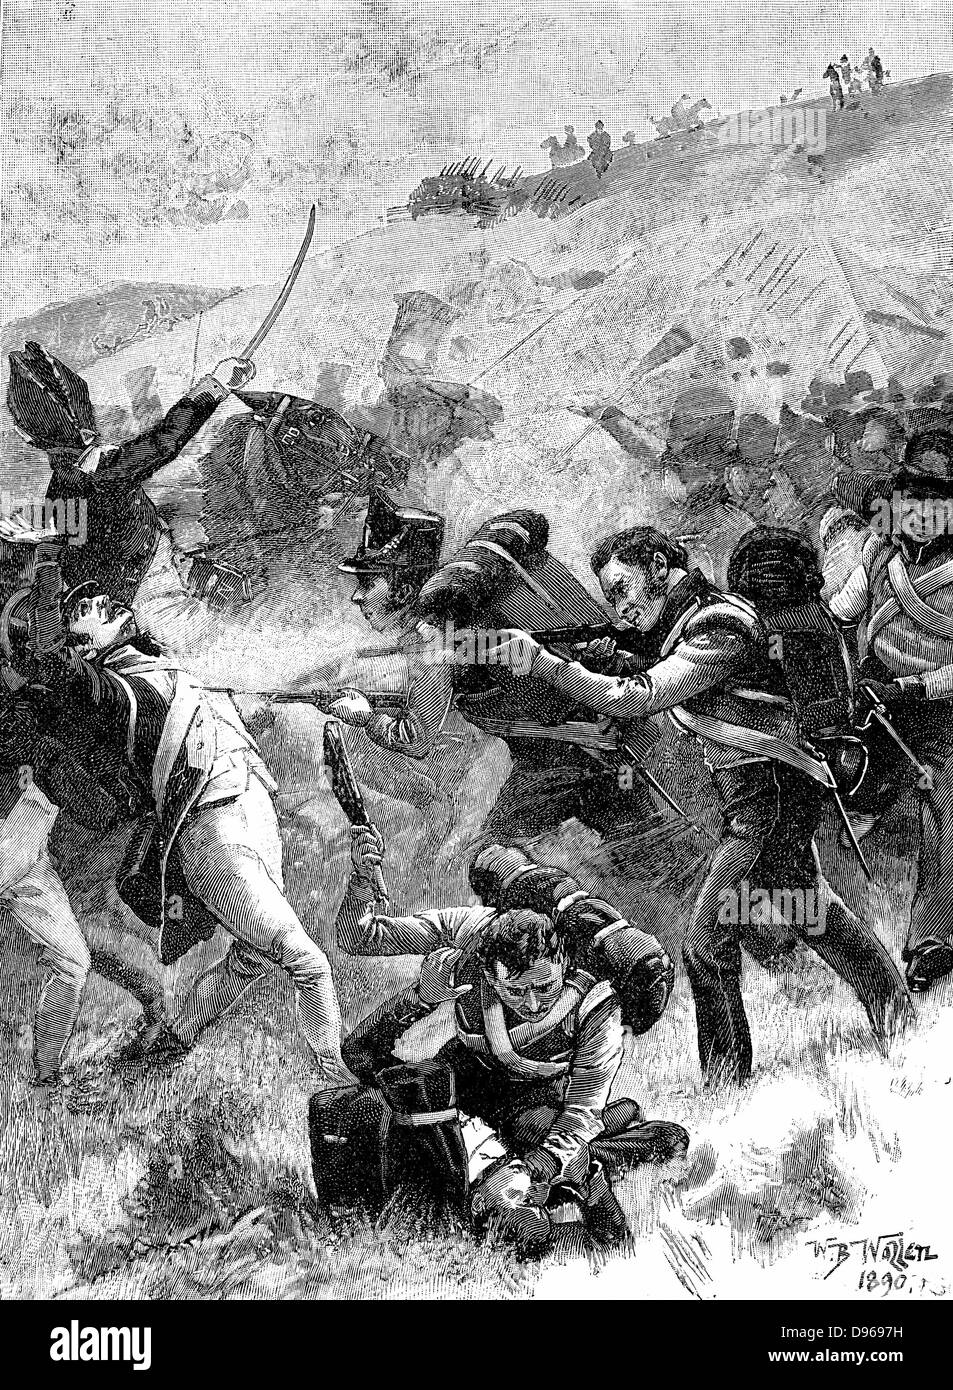 Erholung von der britischen Fuseliers bei Albuera, 16. Mai 1811. Beresford besiegt Soult. Gravur. Stockfoto